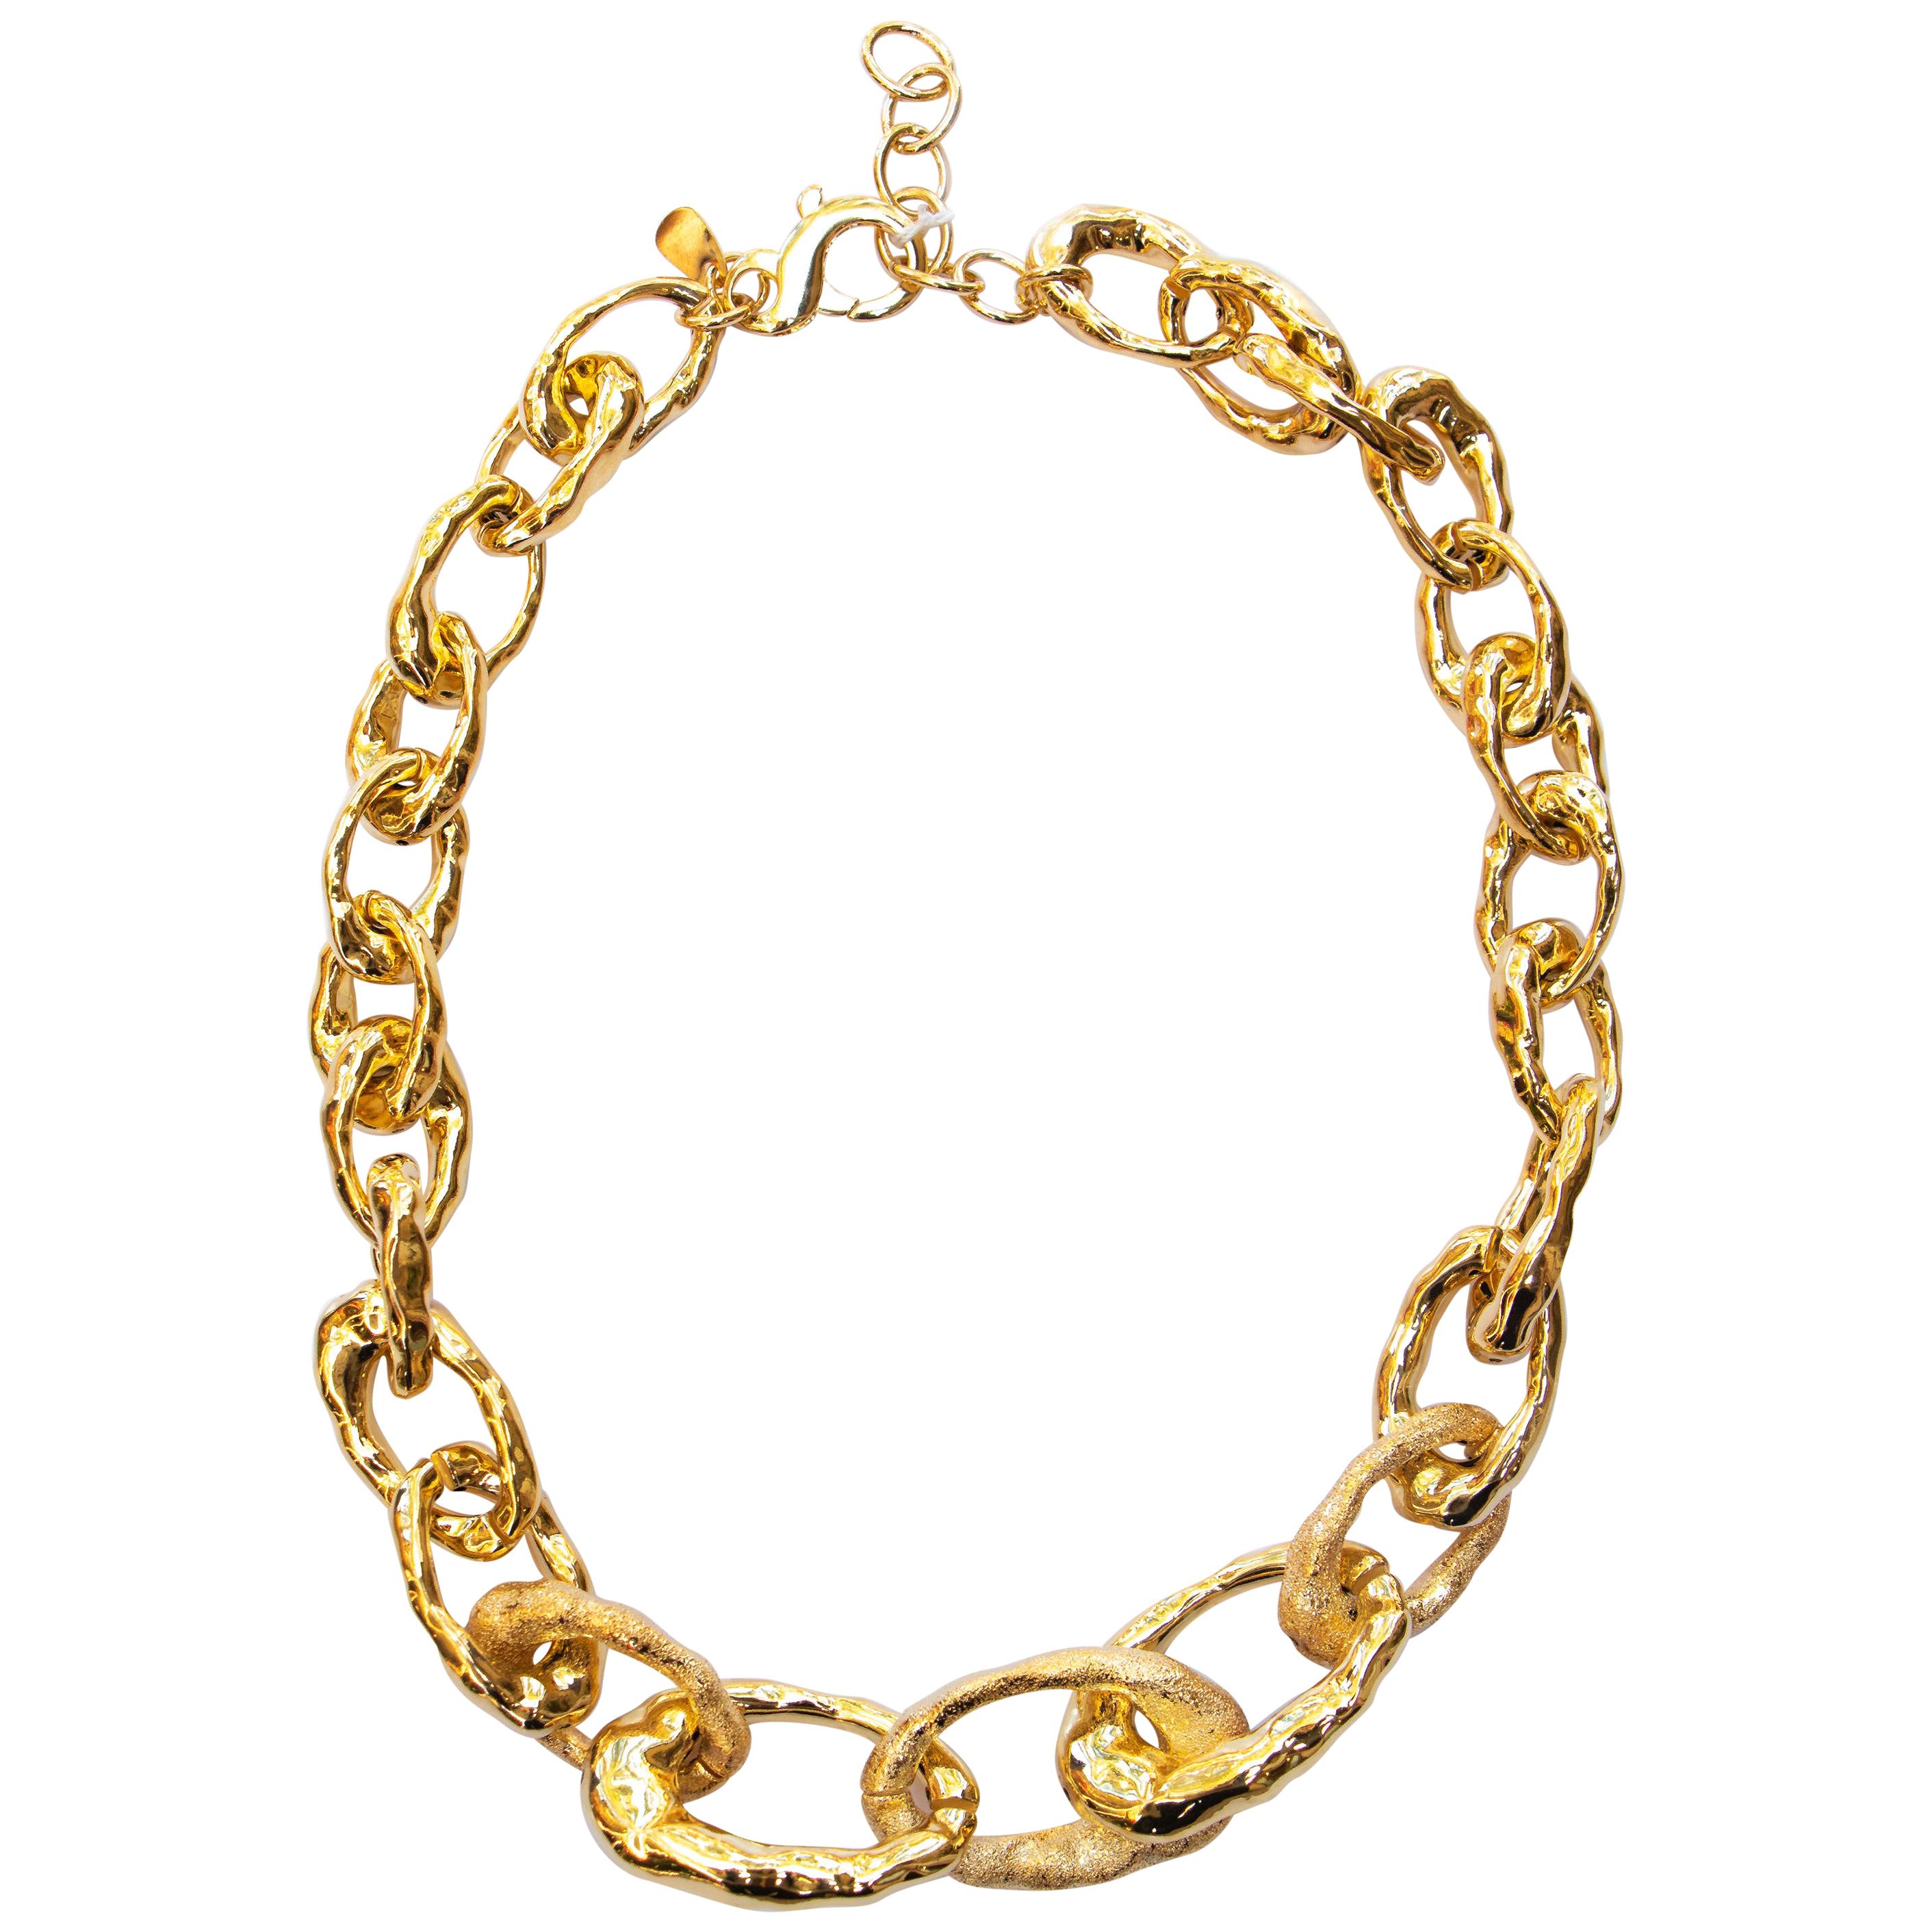 Cristina Sabatini Golden Necklace 18K Gold Infused Plating On Base Metal